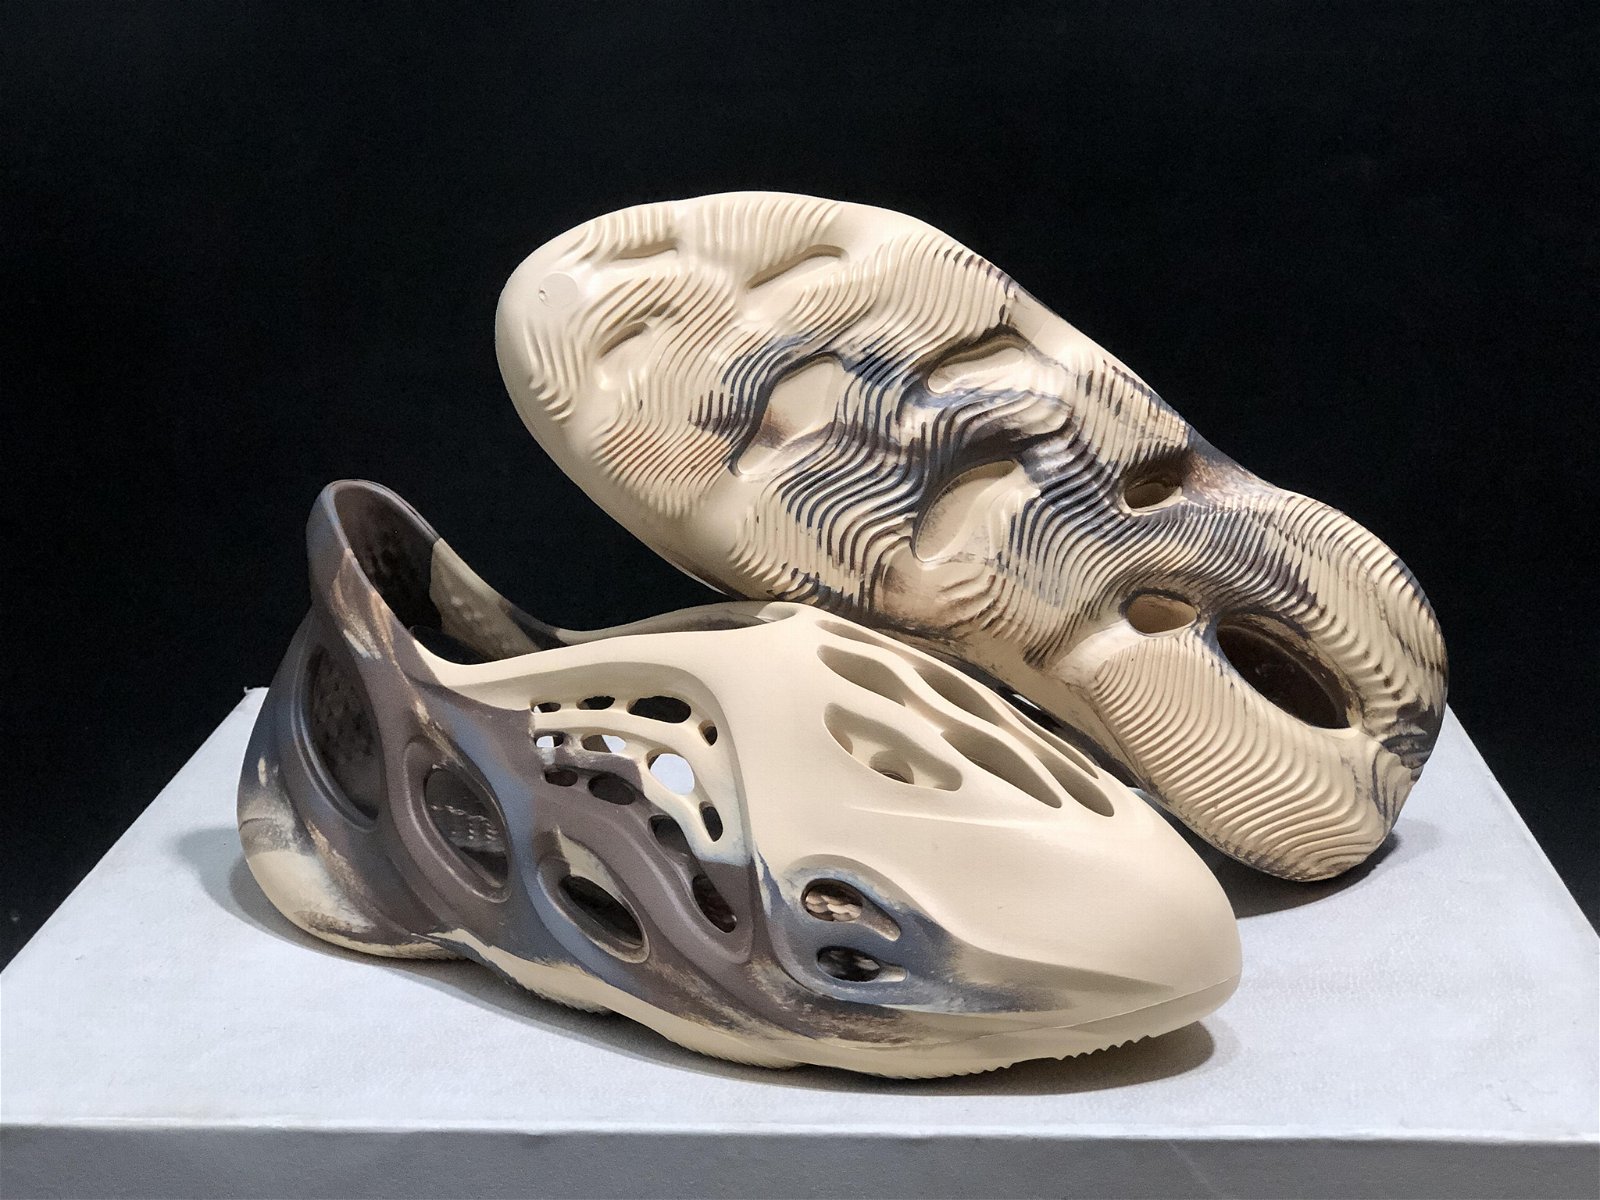        originals Yeezy Foam Runner MX Cream Clay sandal Yeezy women sandals 